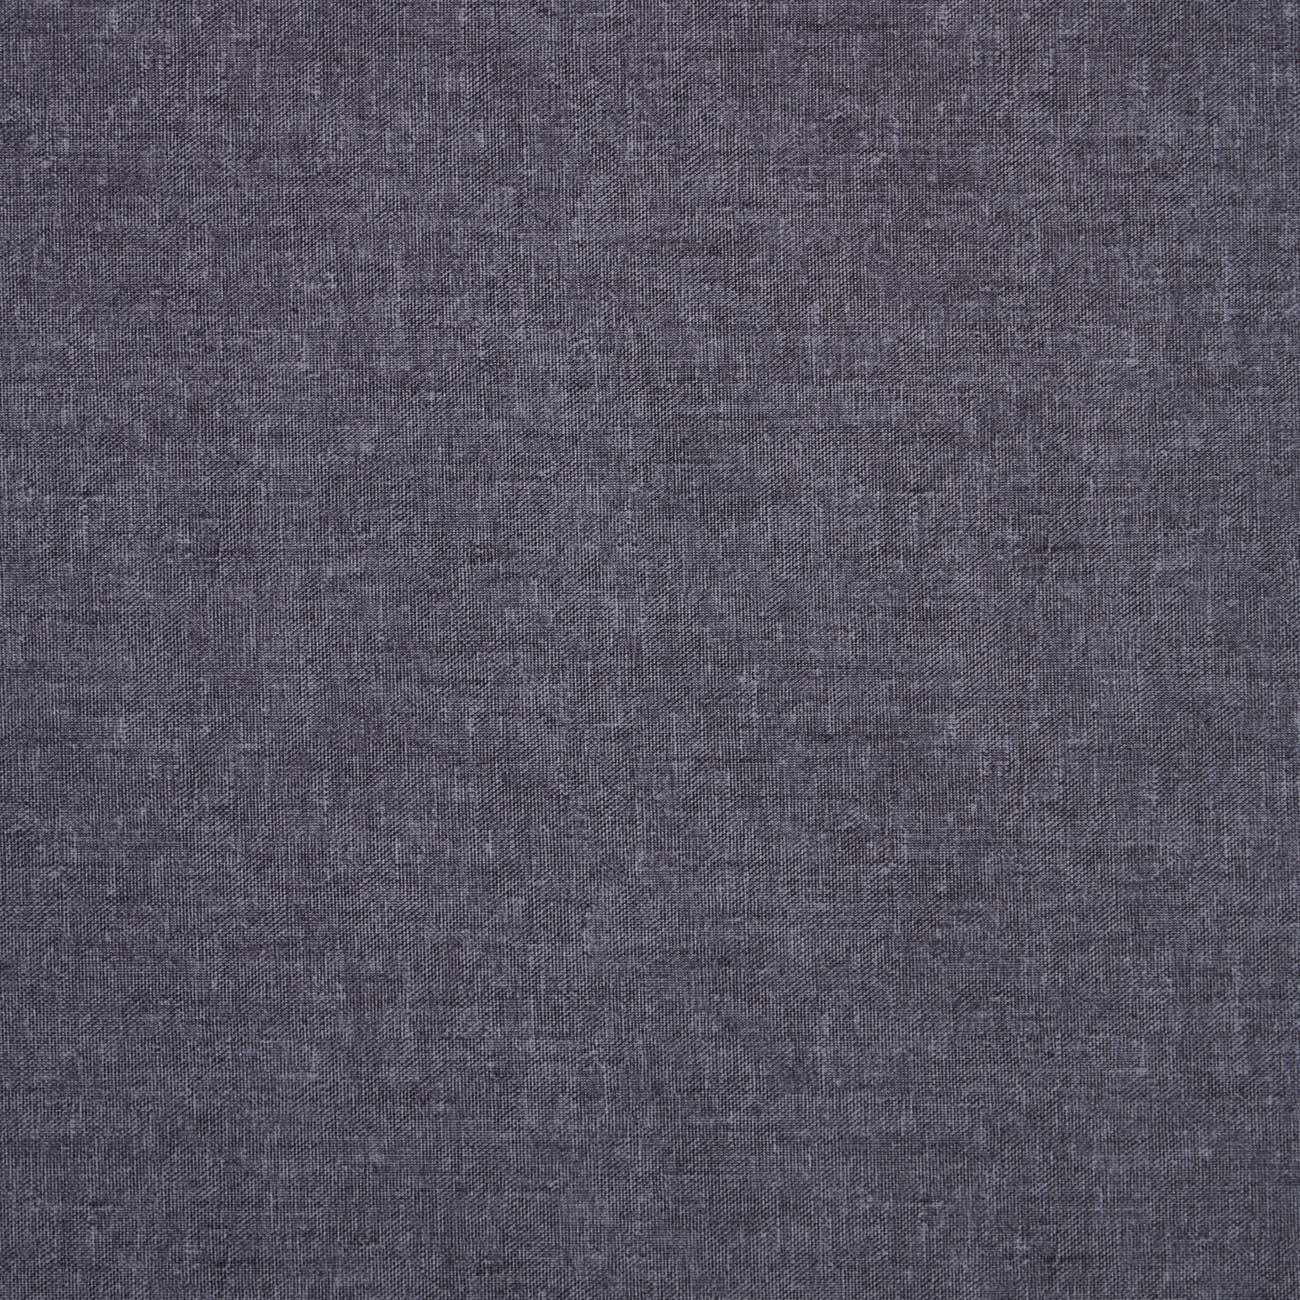 Harris Charcoal Fabric by Clarke & Clarke